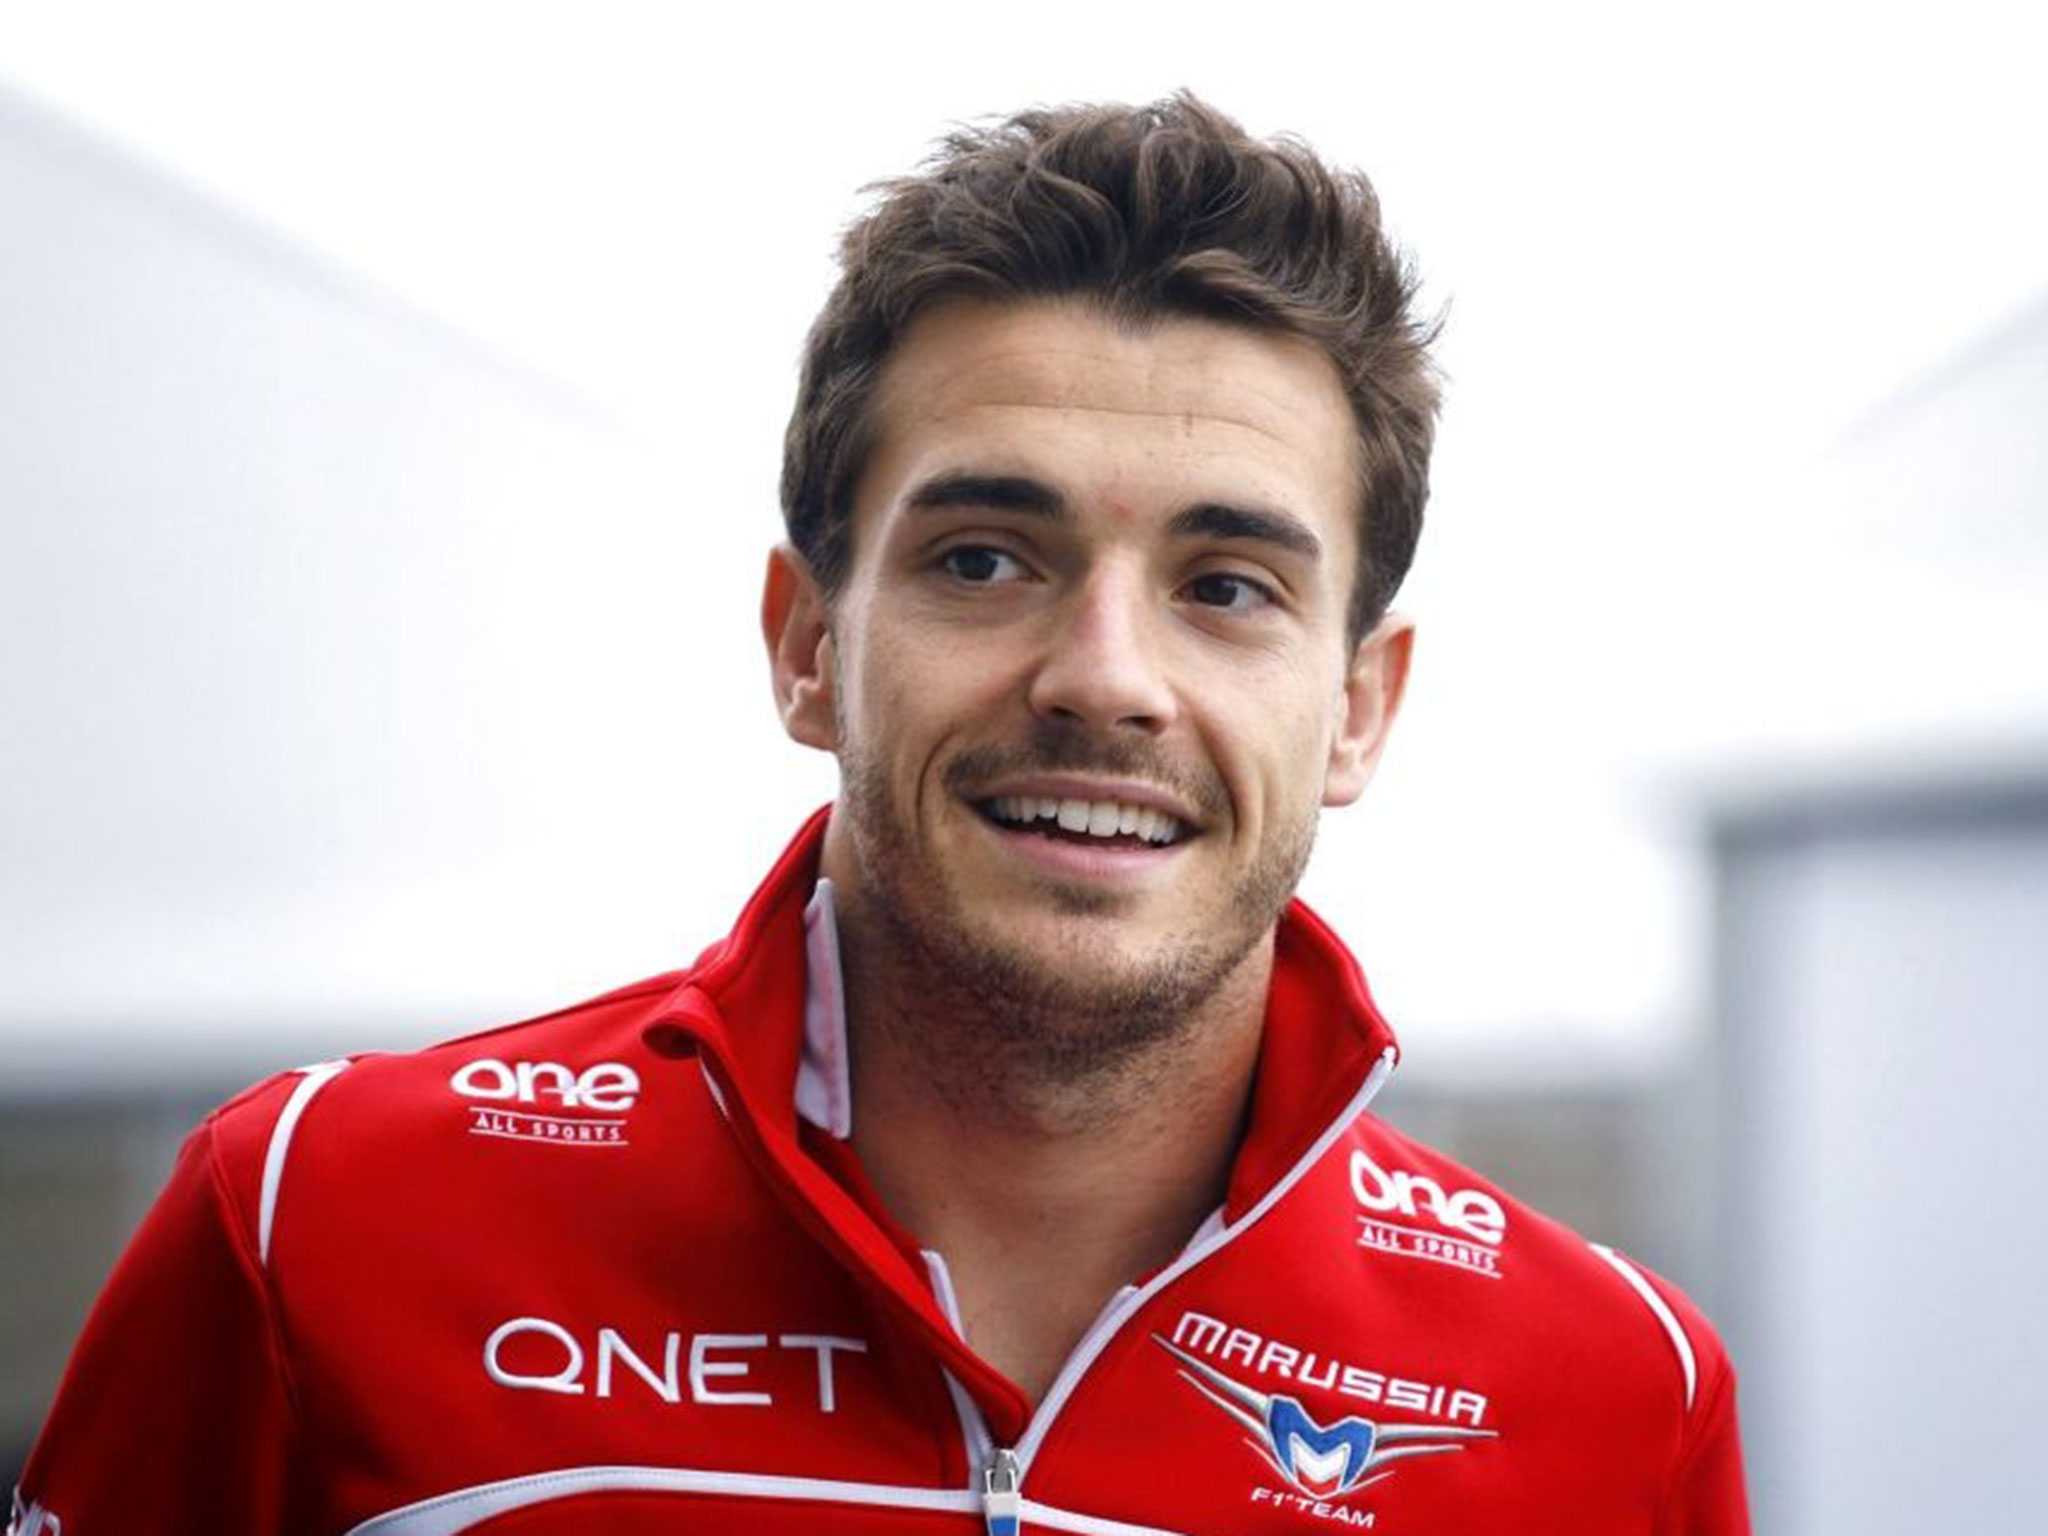 Morto il pilota F1 Jules Bianchi, dopo nove mesi di coma; l'annuncio della famiglia su Twitter